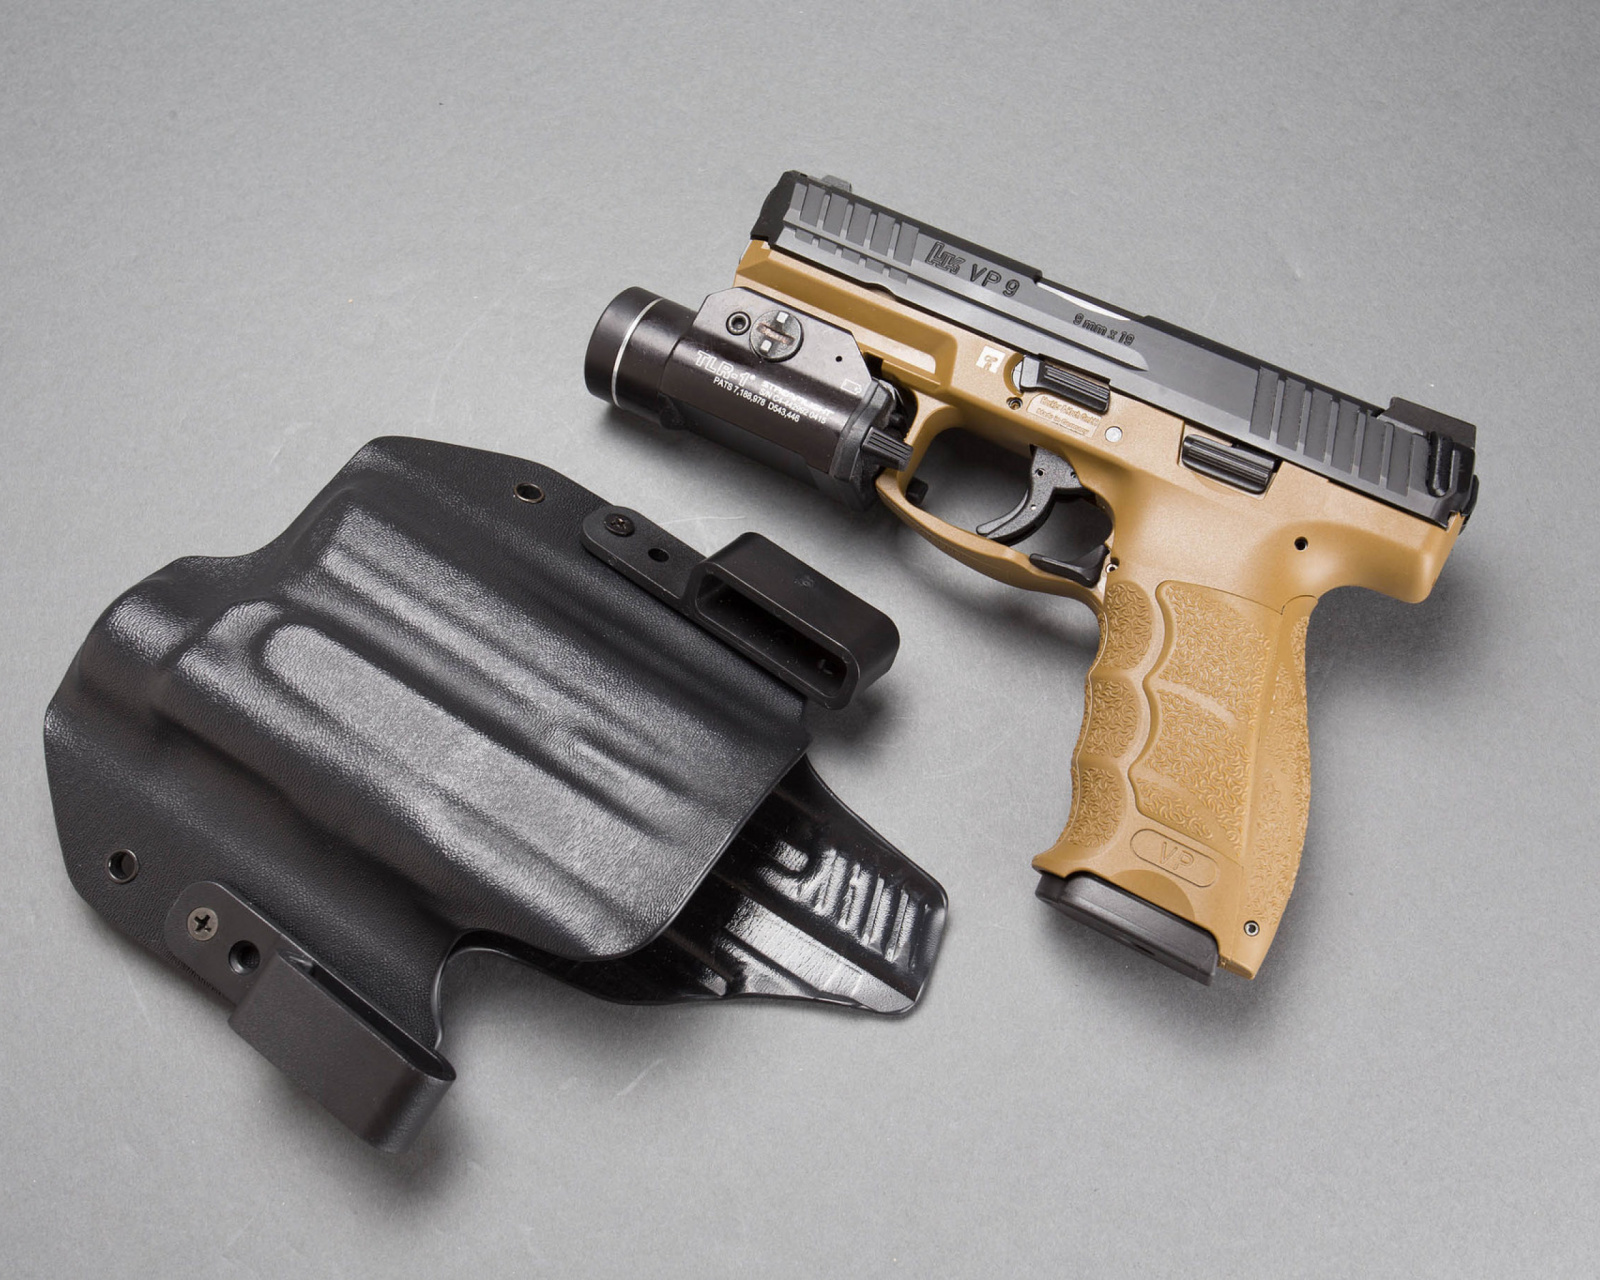 Das Pistols Heckler & Koch 9mm Wallpaper 1600x1280